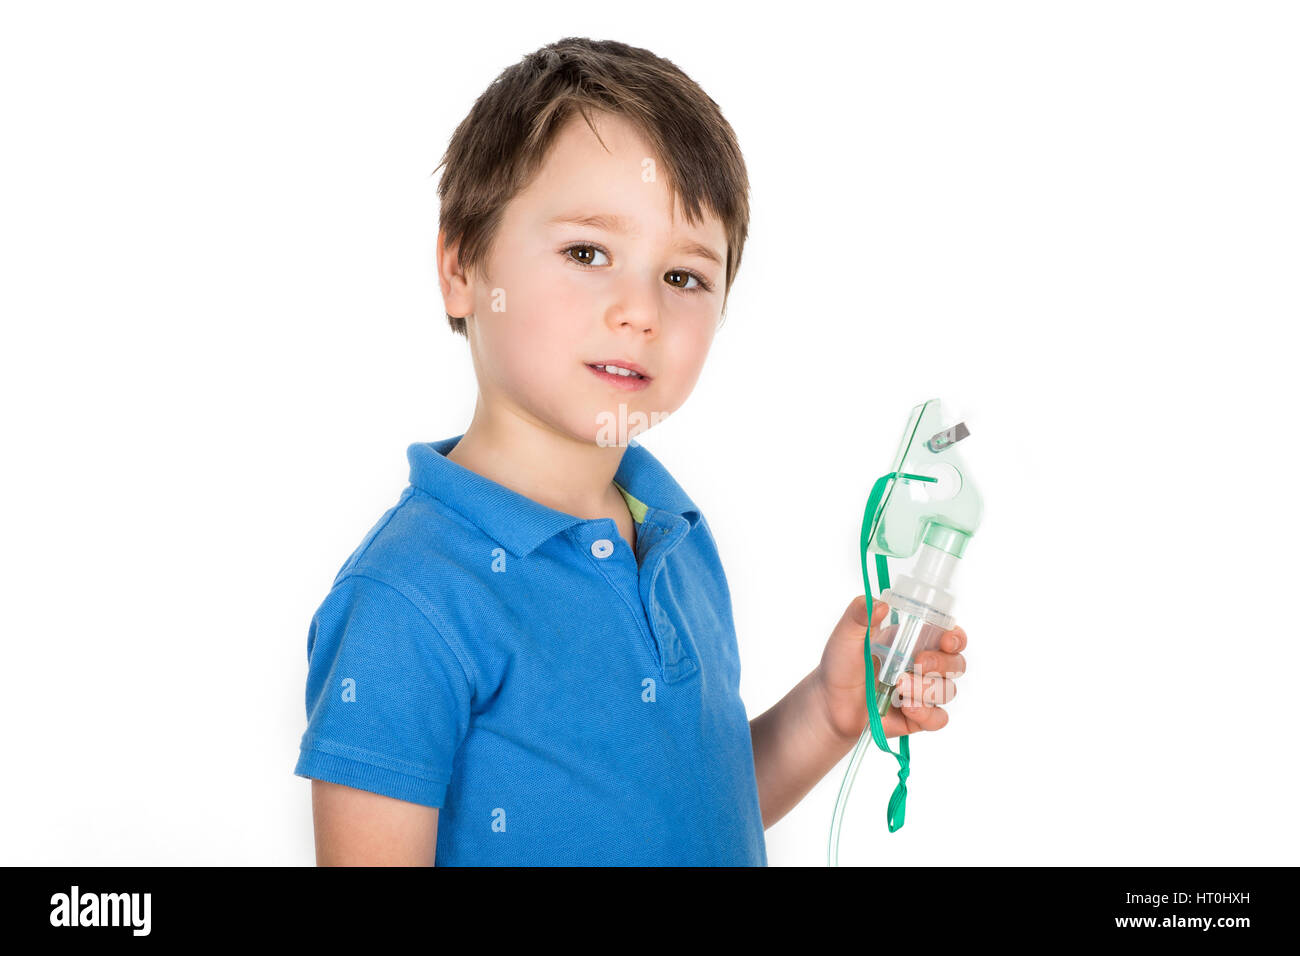 5 Jahre alten Jungen mit Asthma holding Gesichtsmaske aus inhaliergerät Inhalator Maschine. Auf einem weißen Hintergrund. Stockfoto